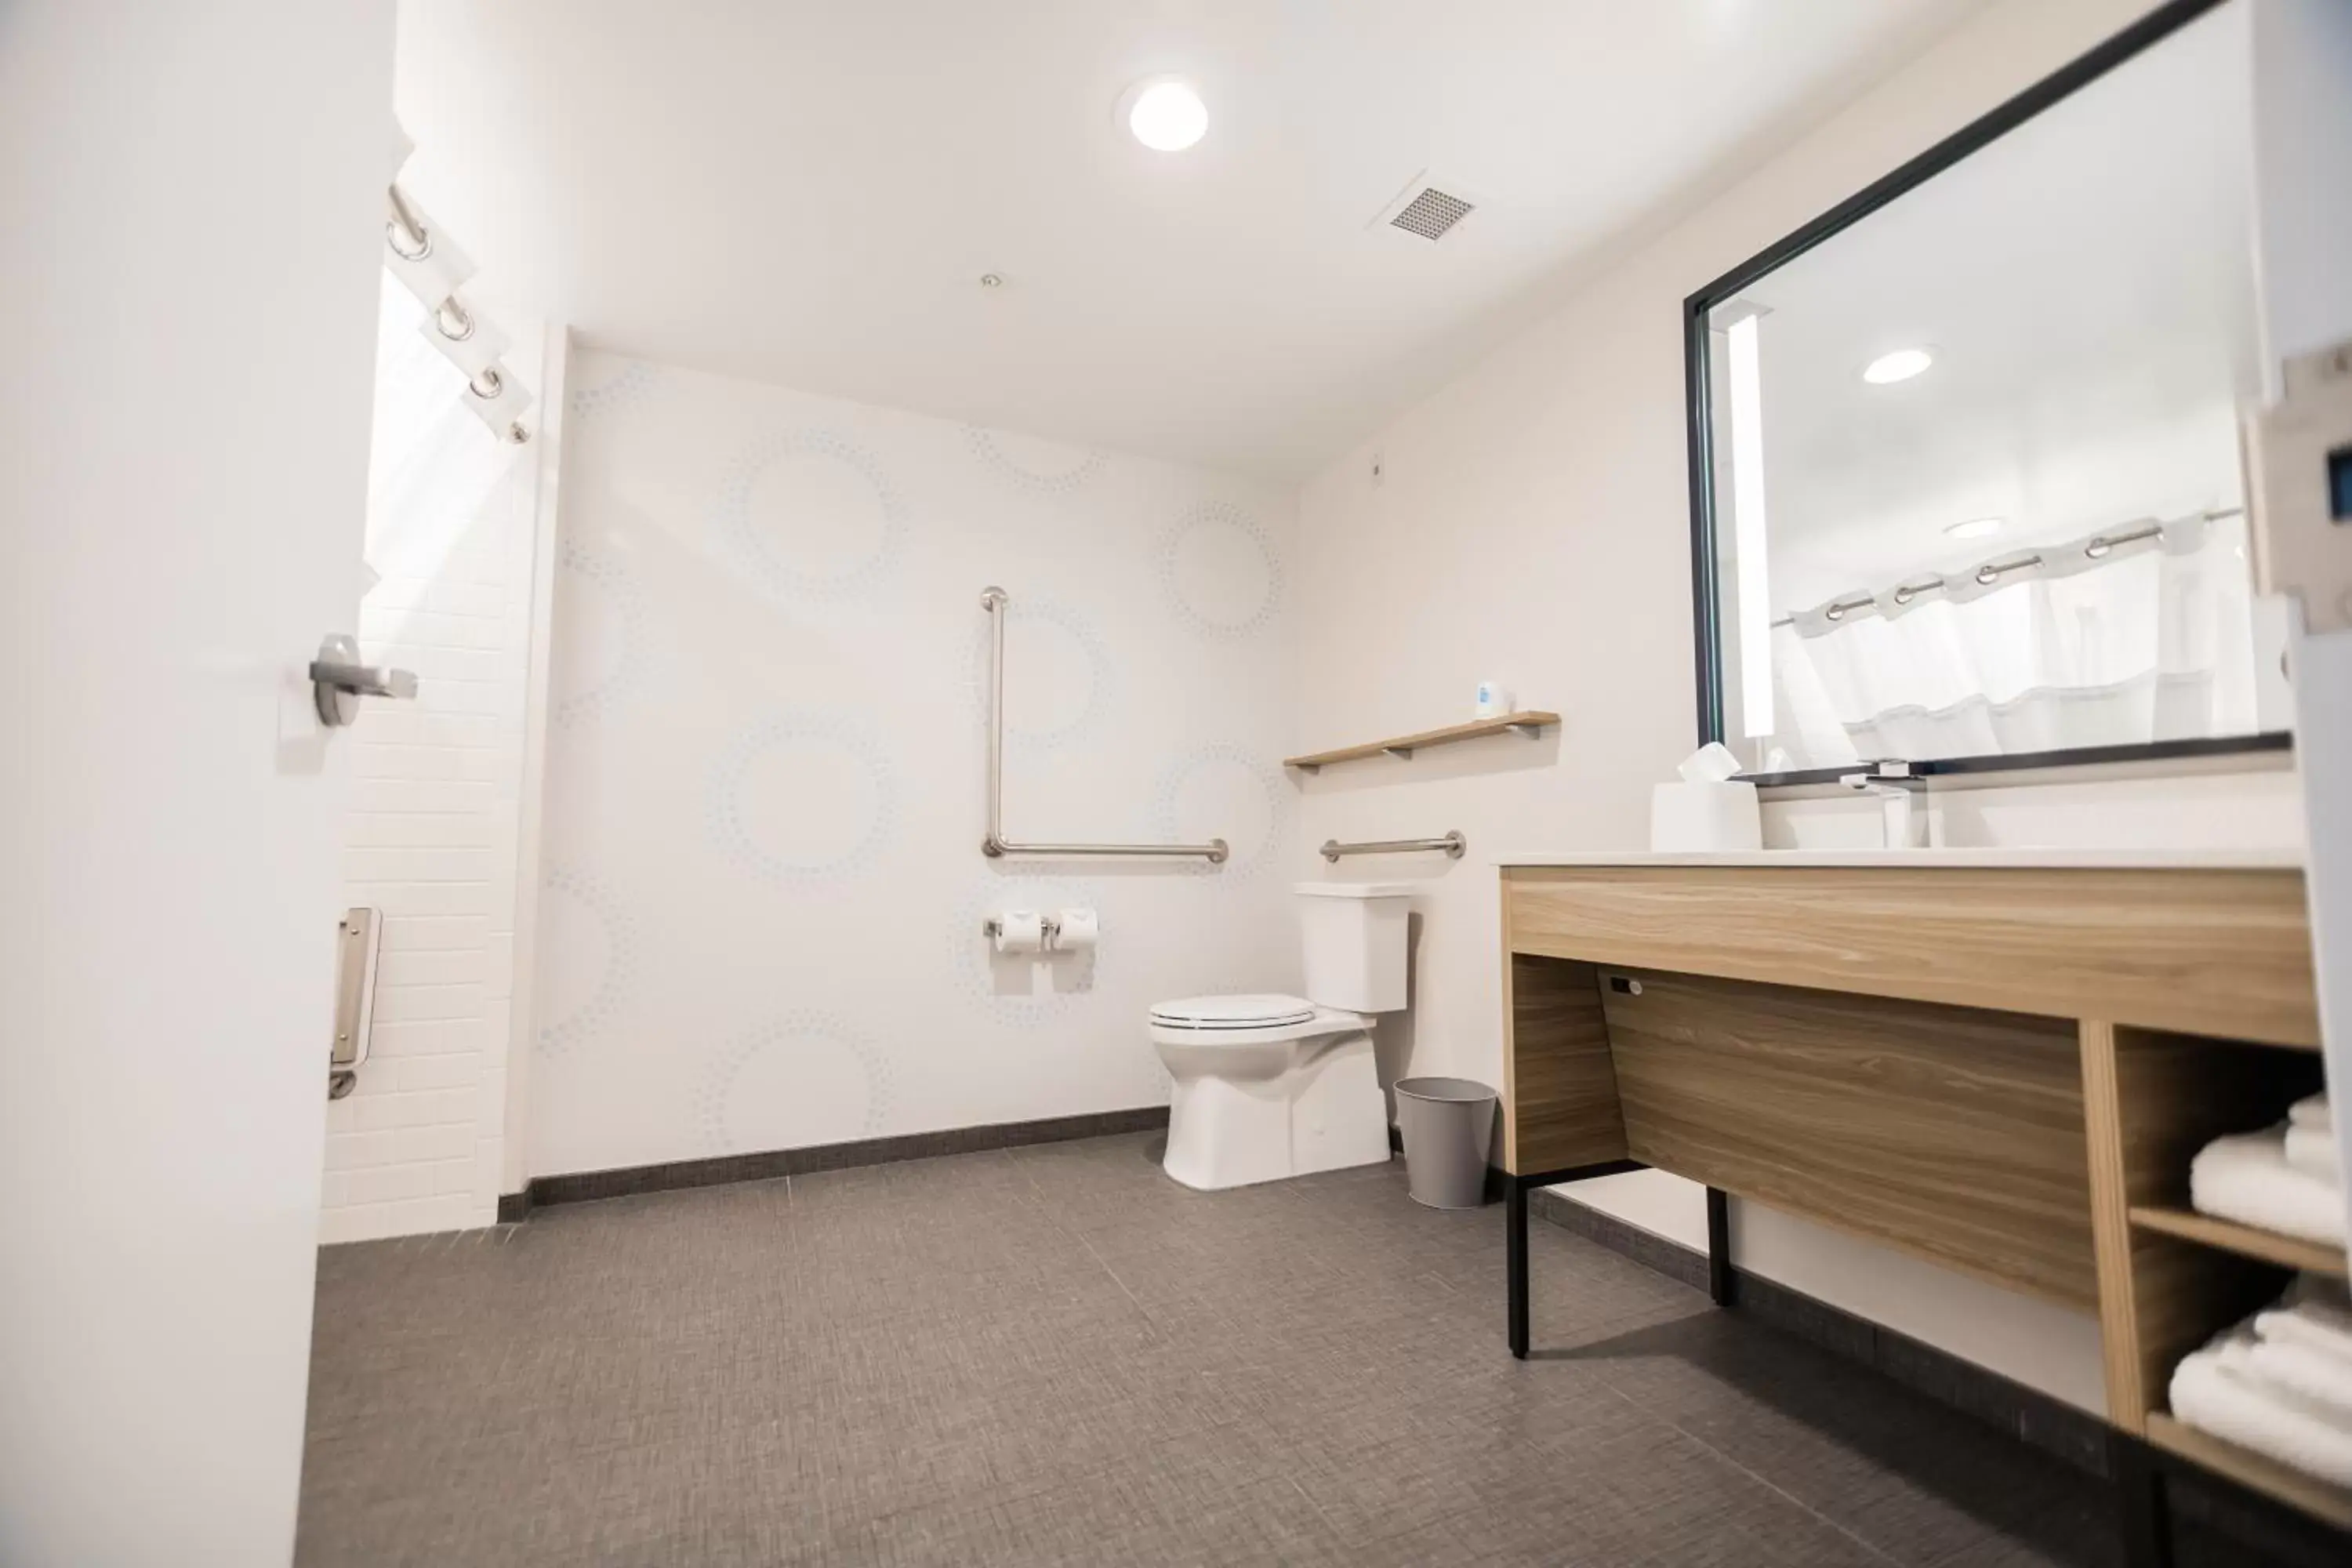 Bathroom in Tru By Hilton Yarmouth, Ns